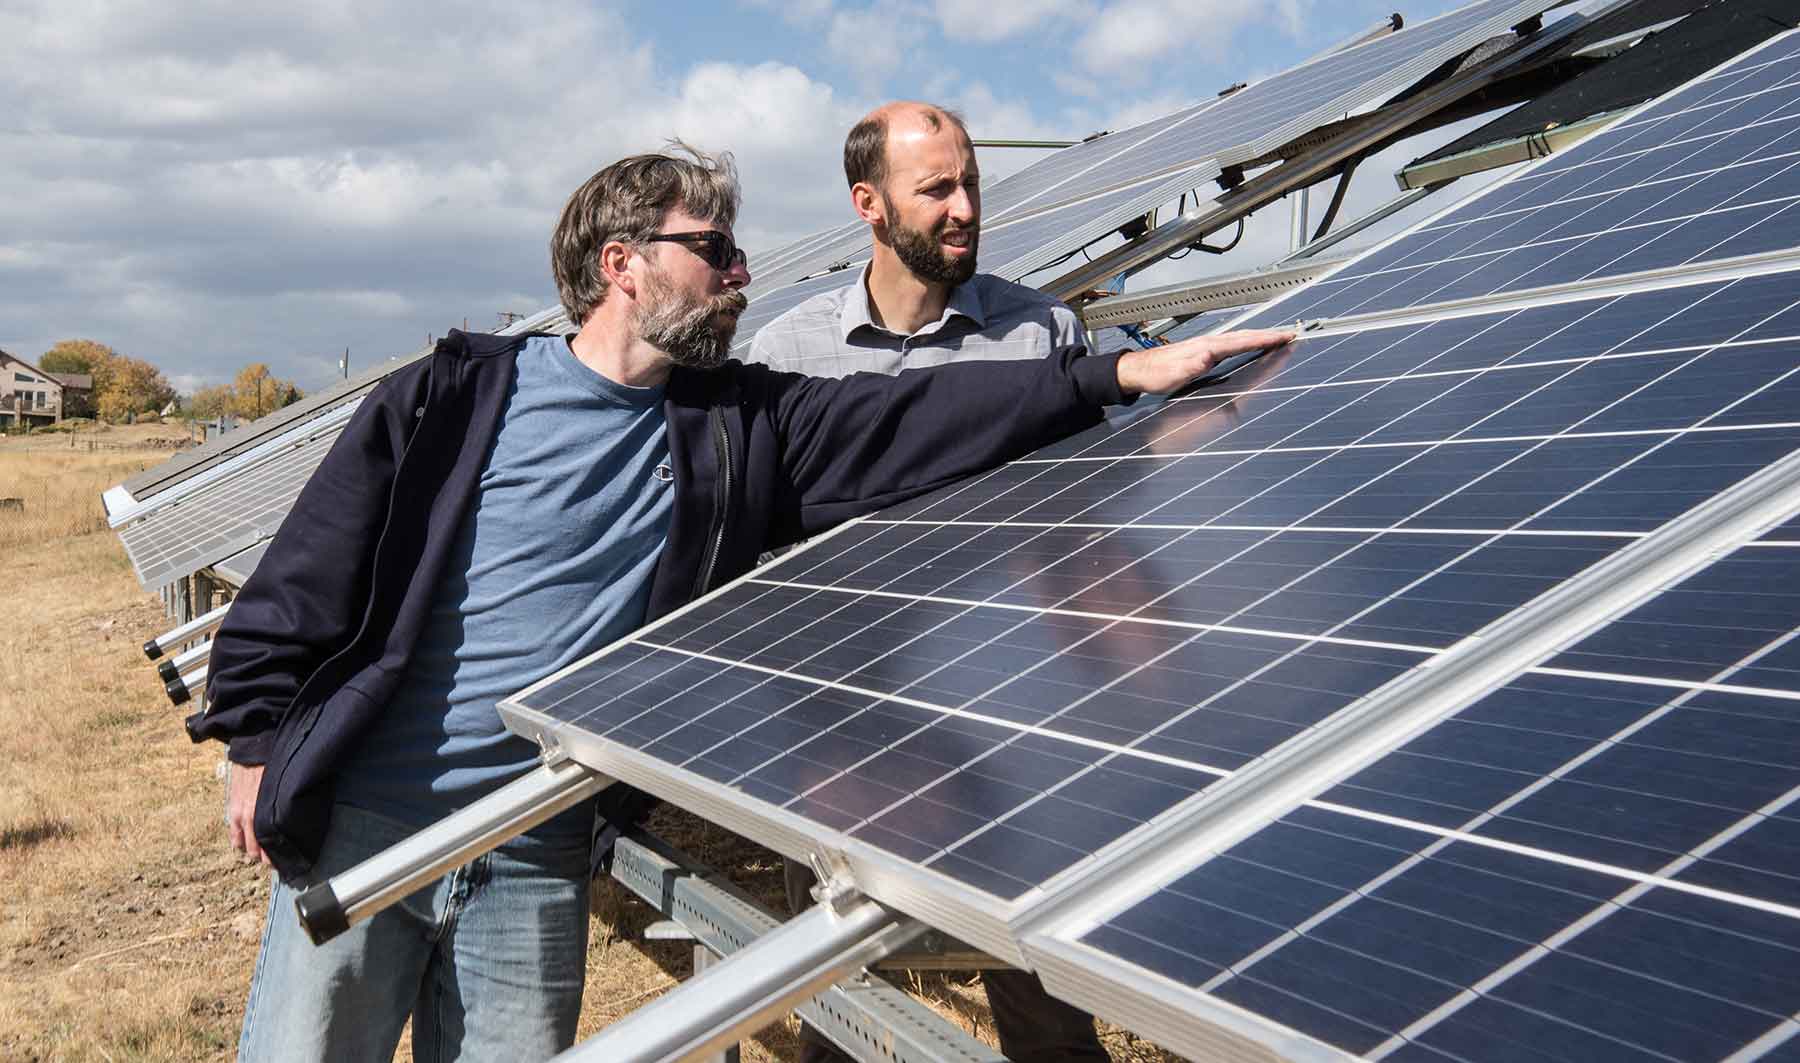 NREL opens solar array field to inform public